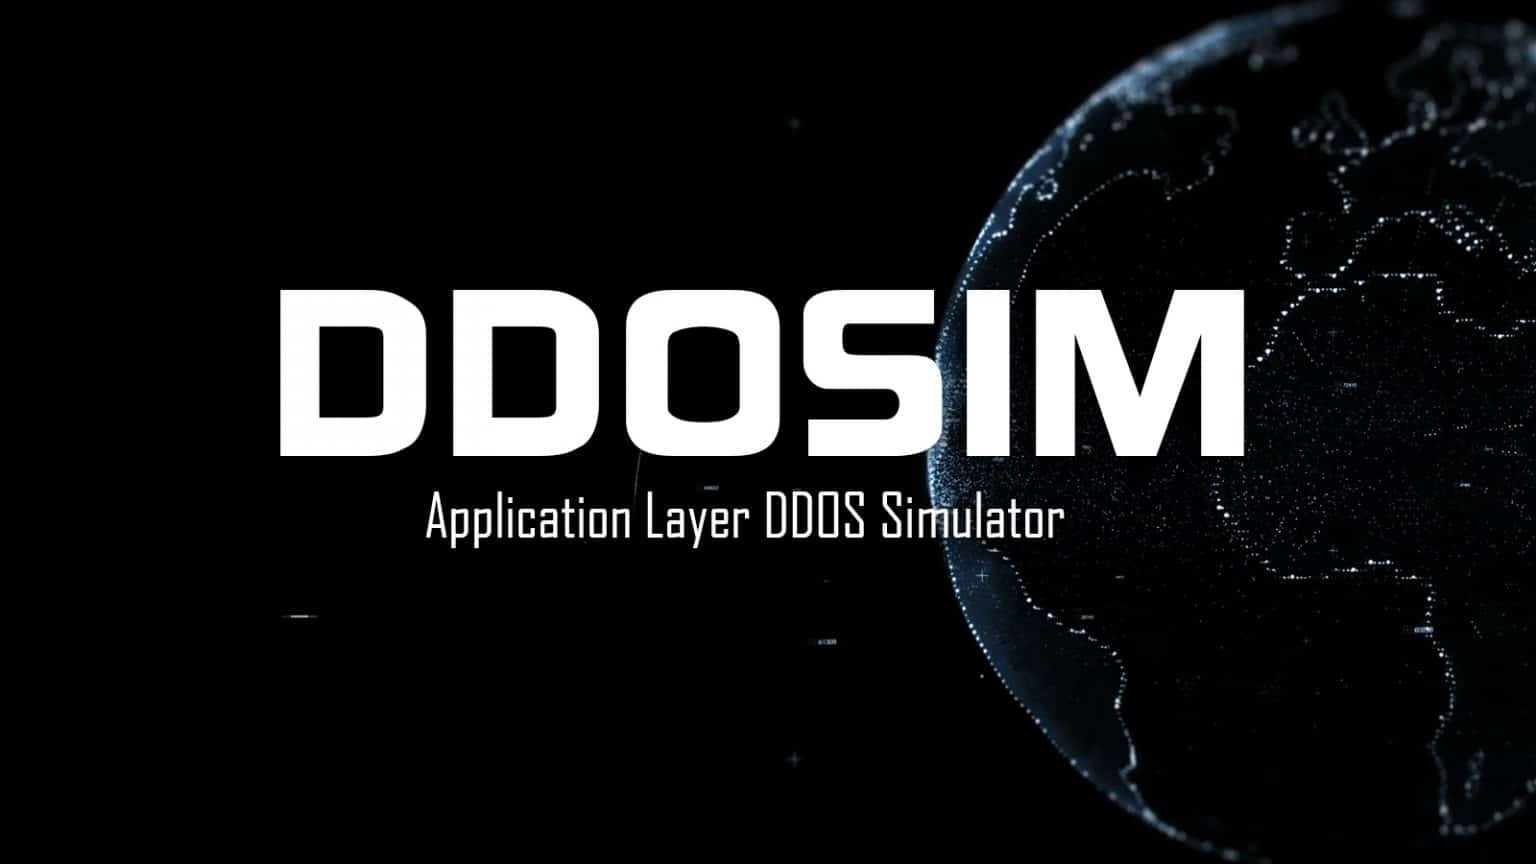 ddos simulation testing tools